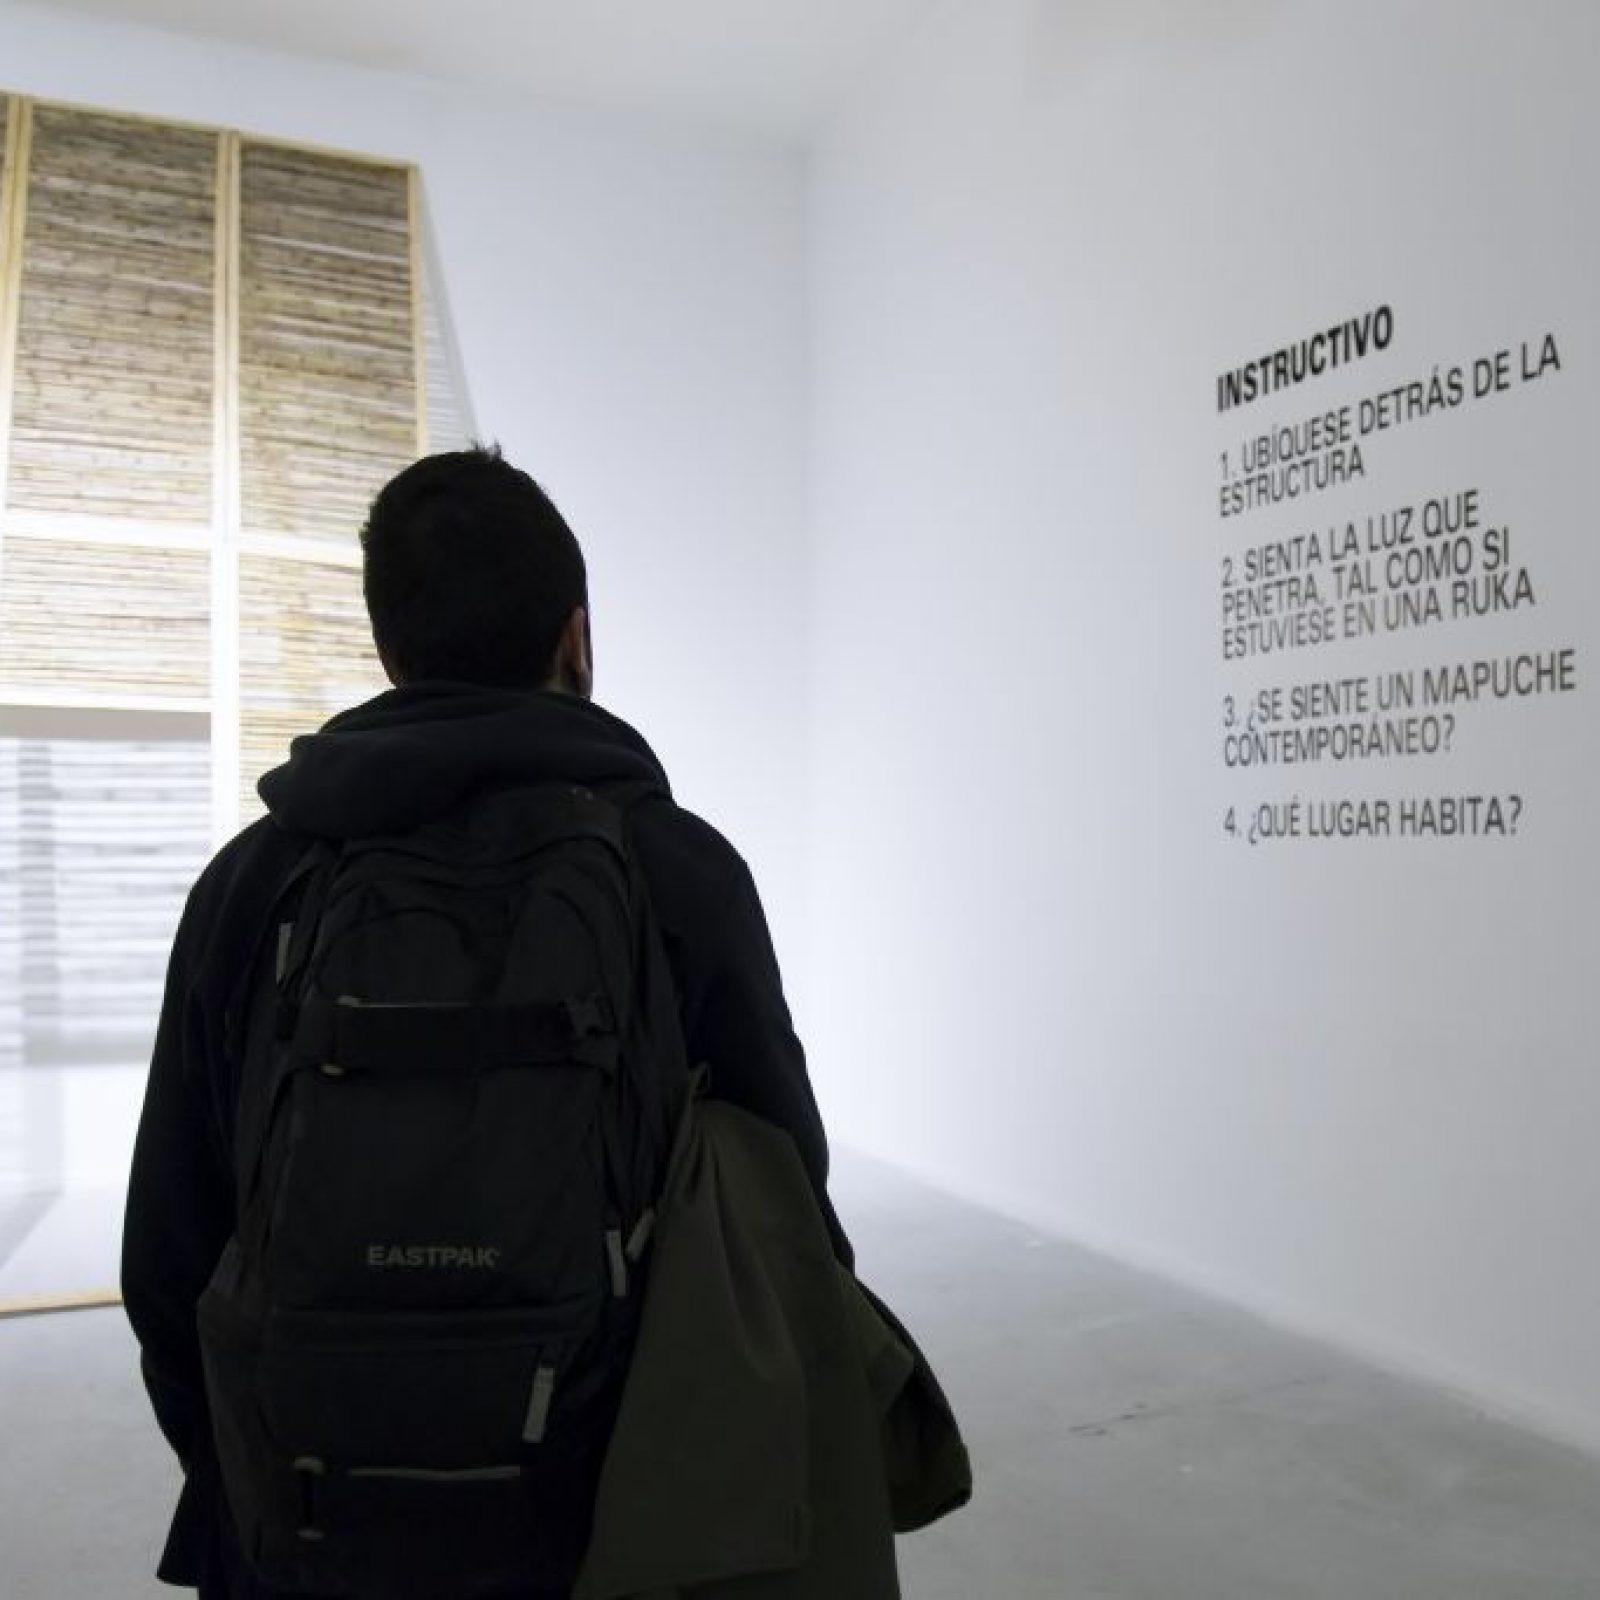 Sebastián Calfuqueo. Zonas en Disputa. Vista de la muestra. Museo de Arte Contemporáneo (MAC), Santiago de Chile, 2016. Foto: María José Canales/MAC.